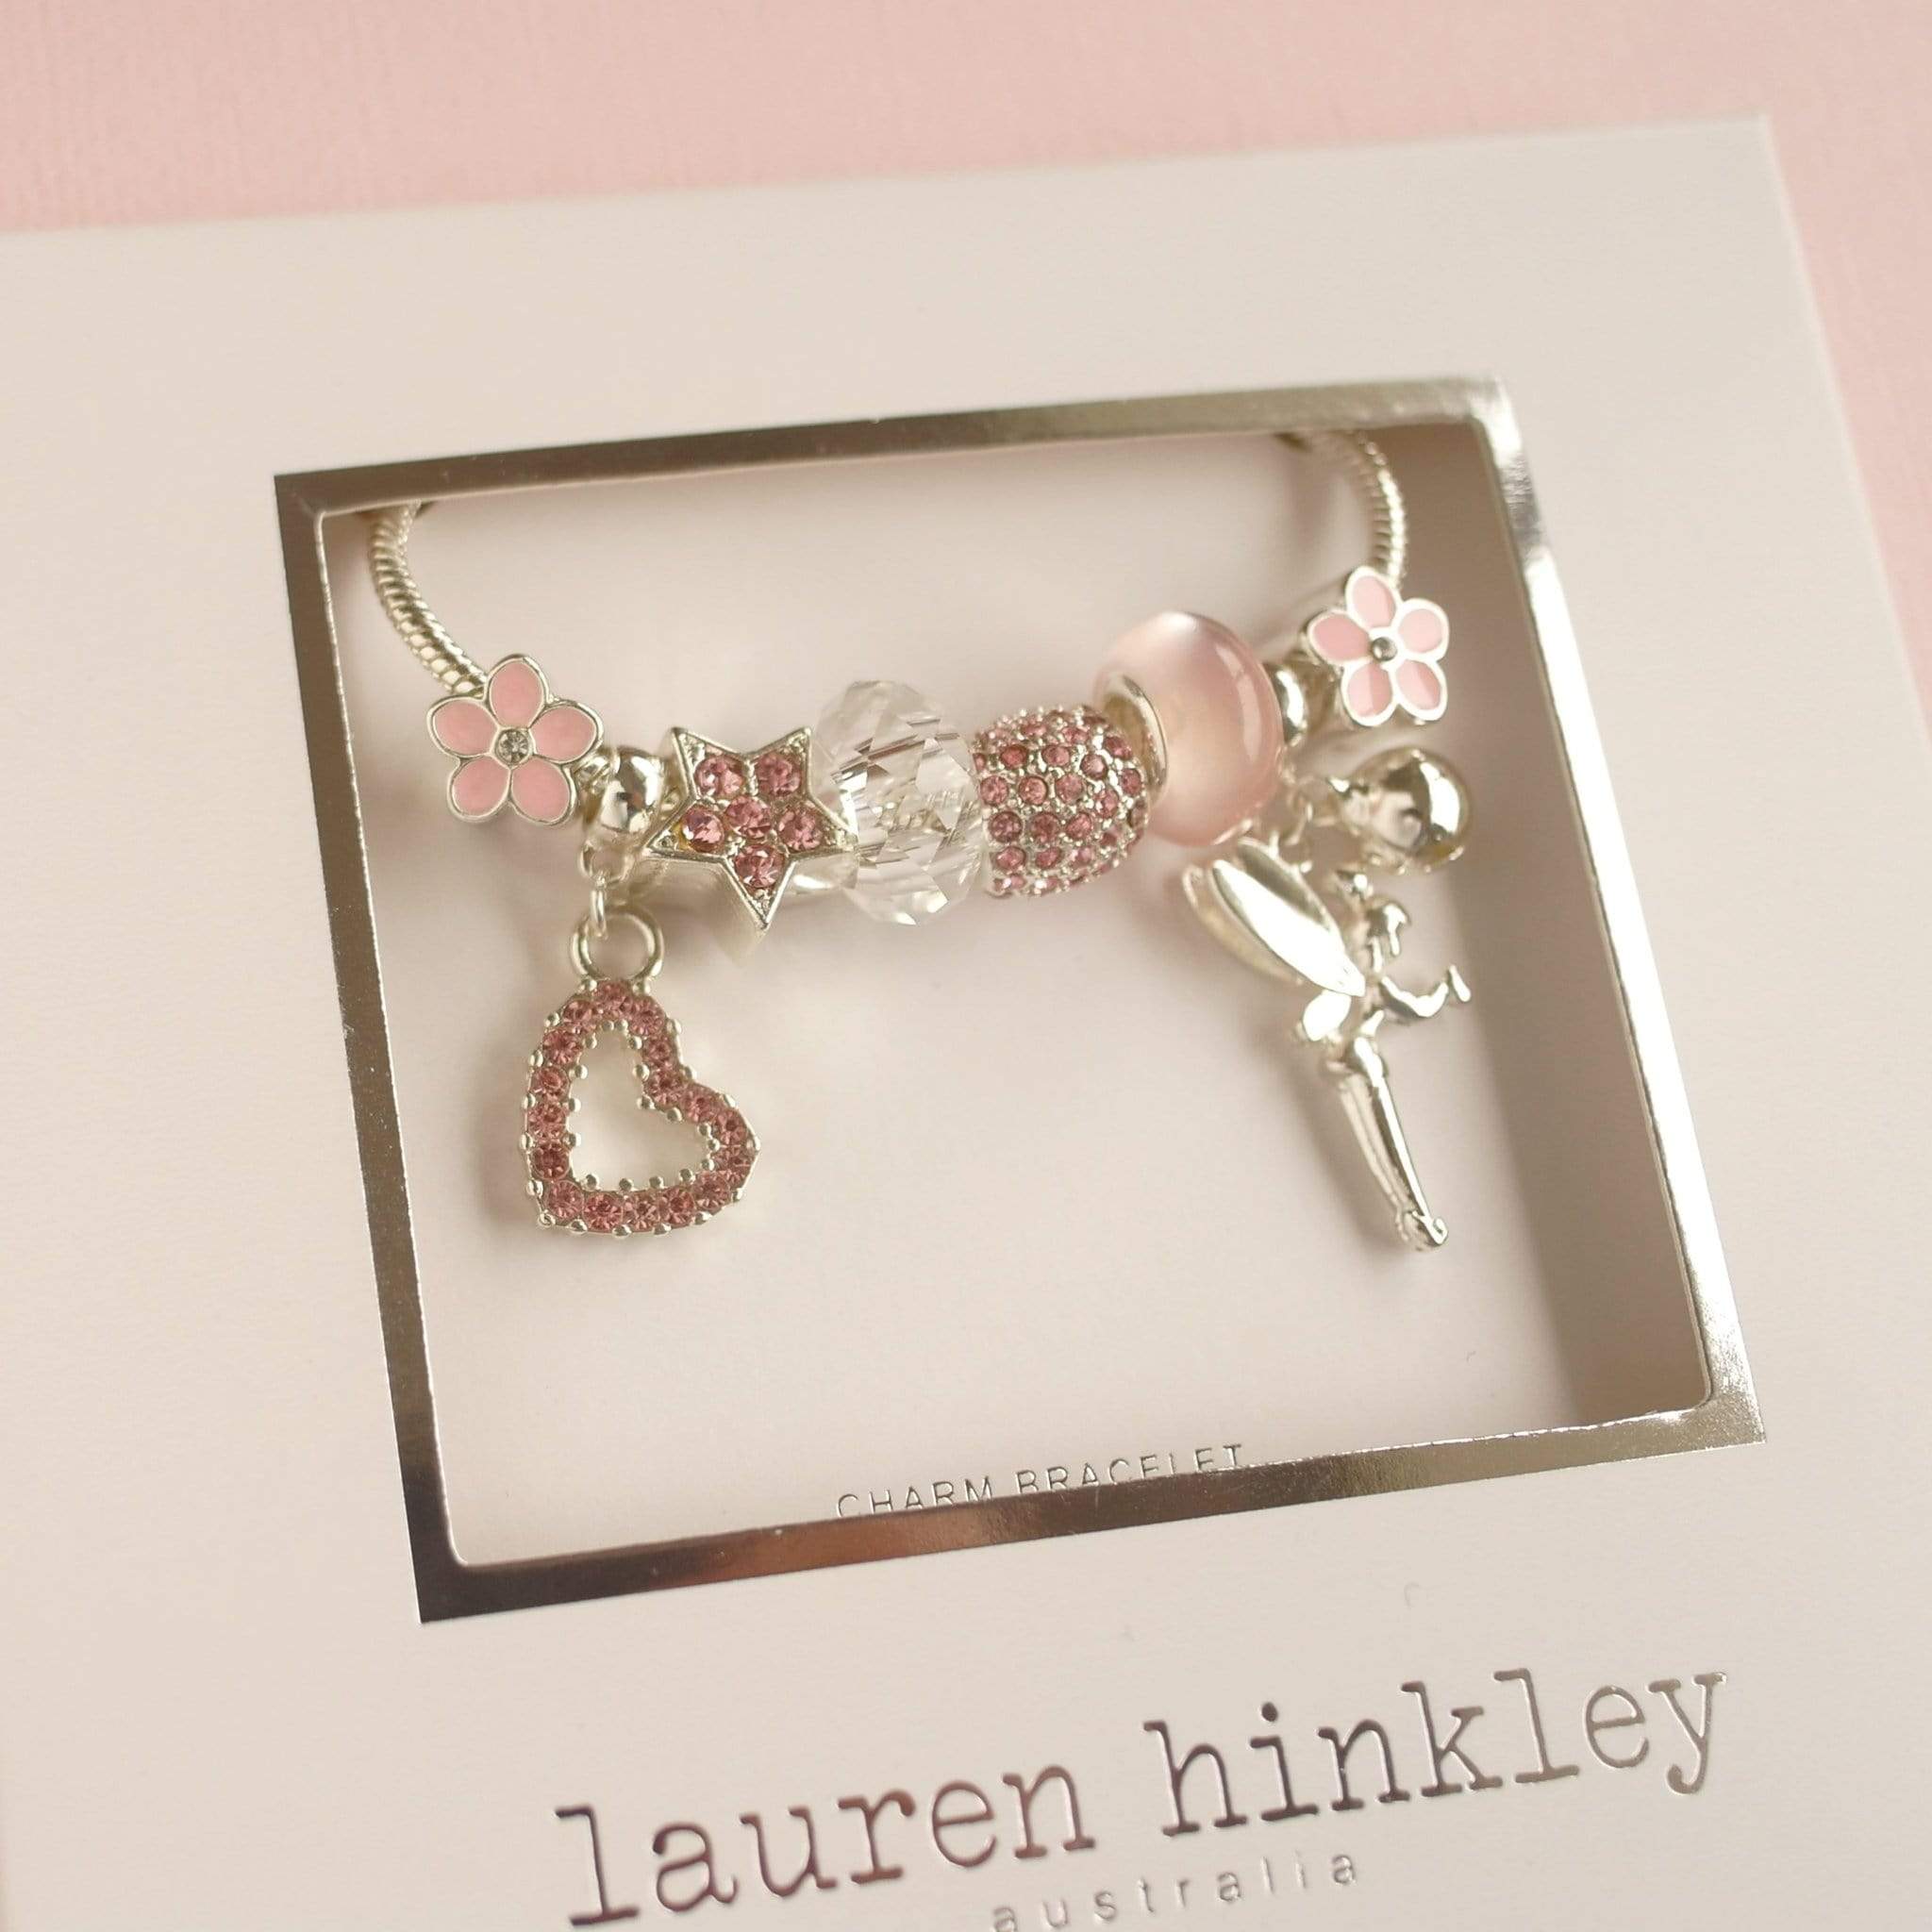 Lauren Hinkley Girls Accessory Fairy Charm Bracelet